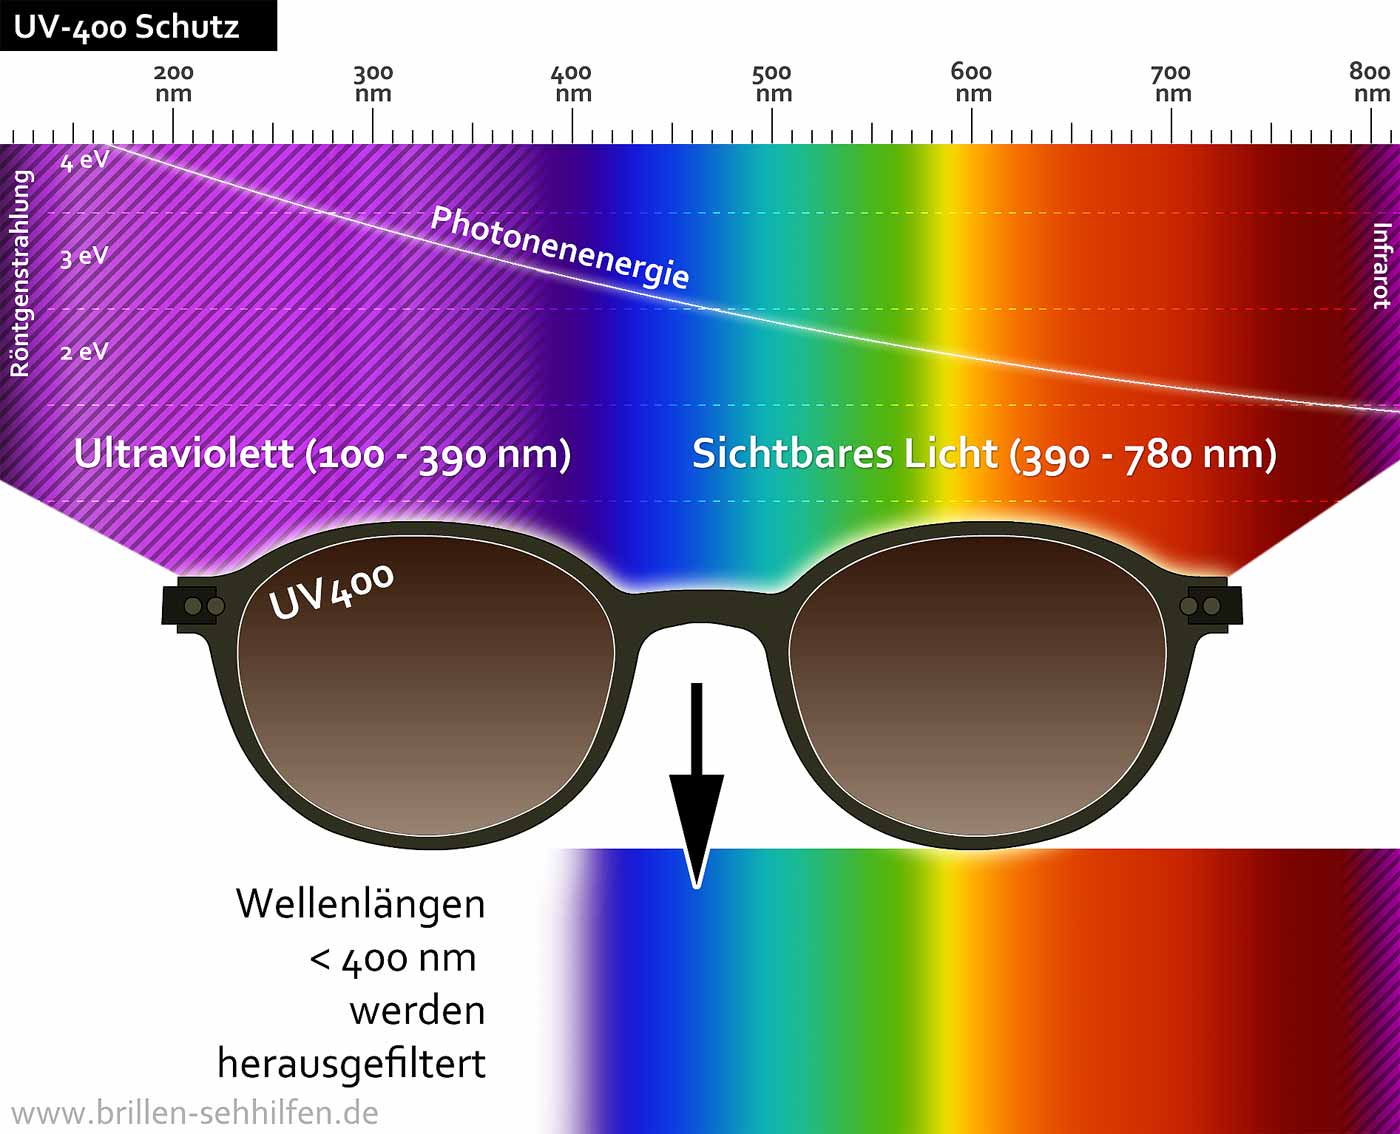 UV400 Schützend Brille Motorrad Brille Auge Maske Rahmen Ultraviolett Strahlen Schutz Belüftung System Abs 